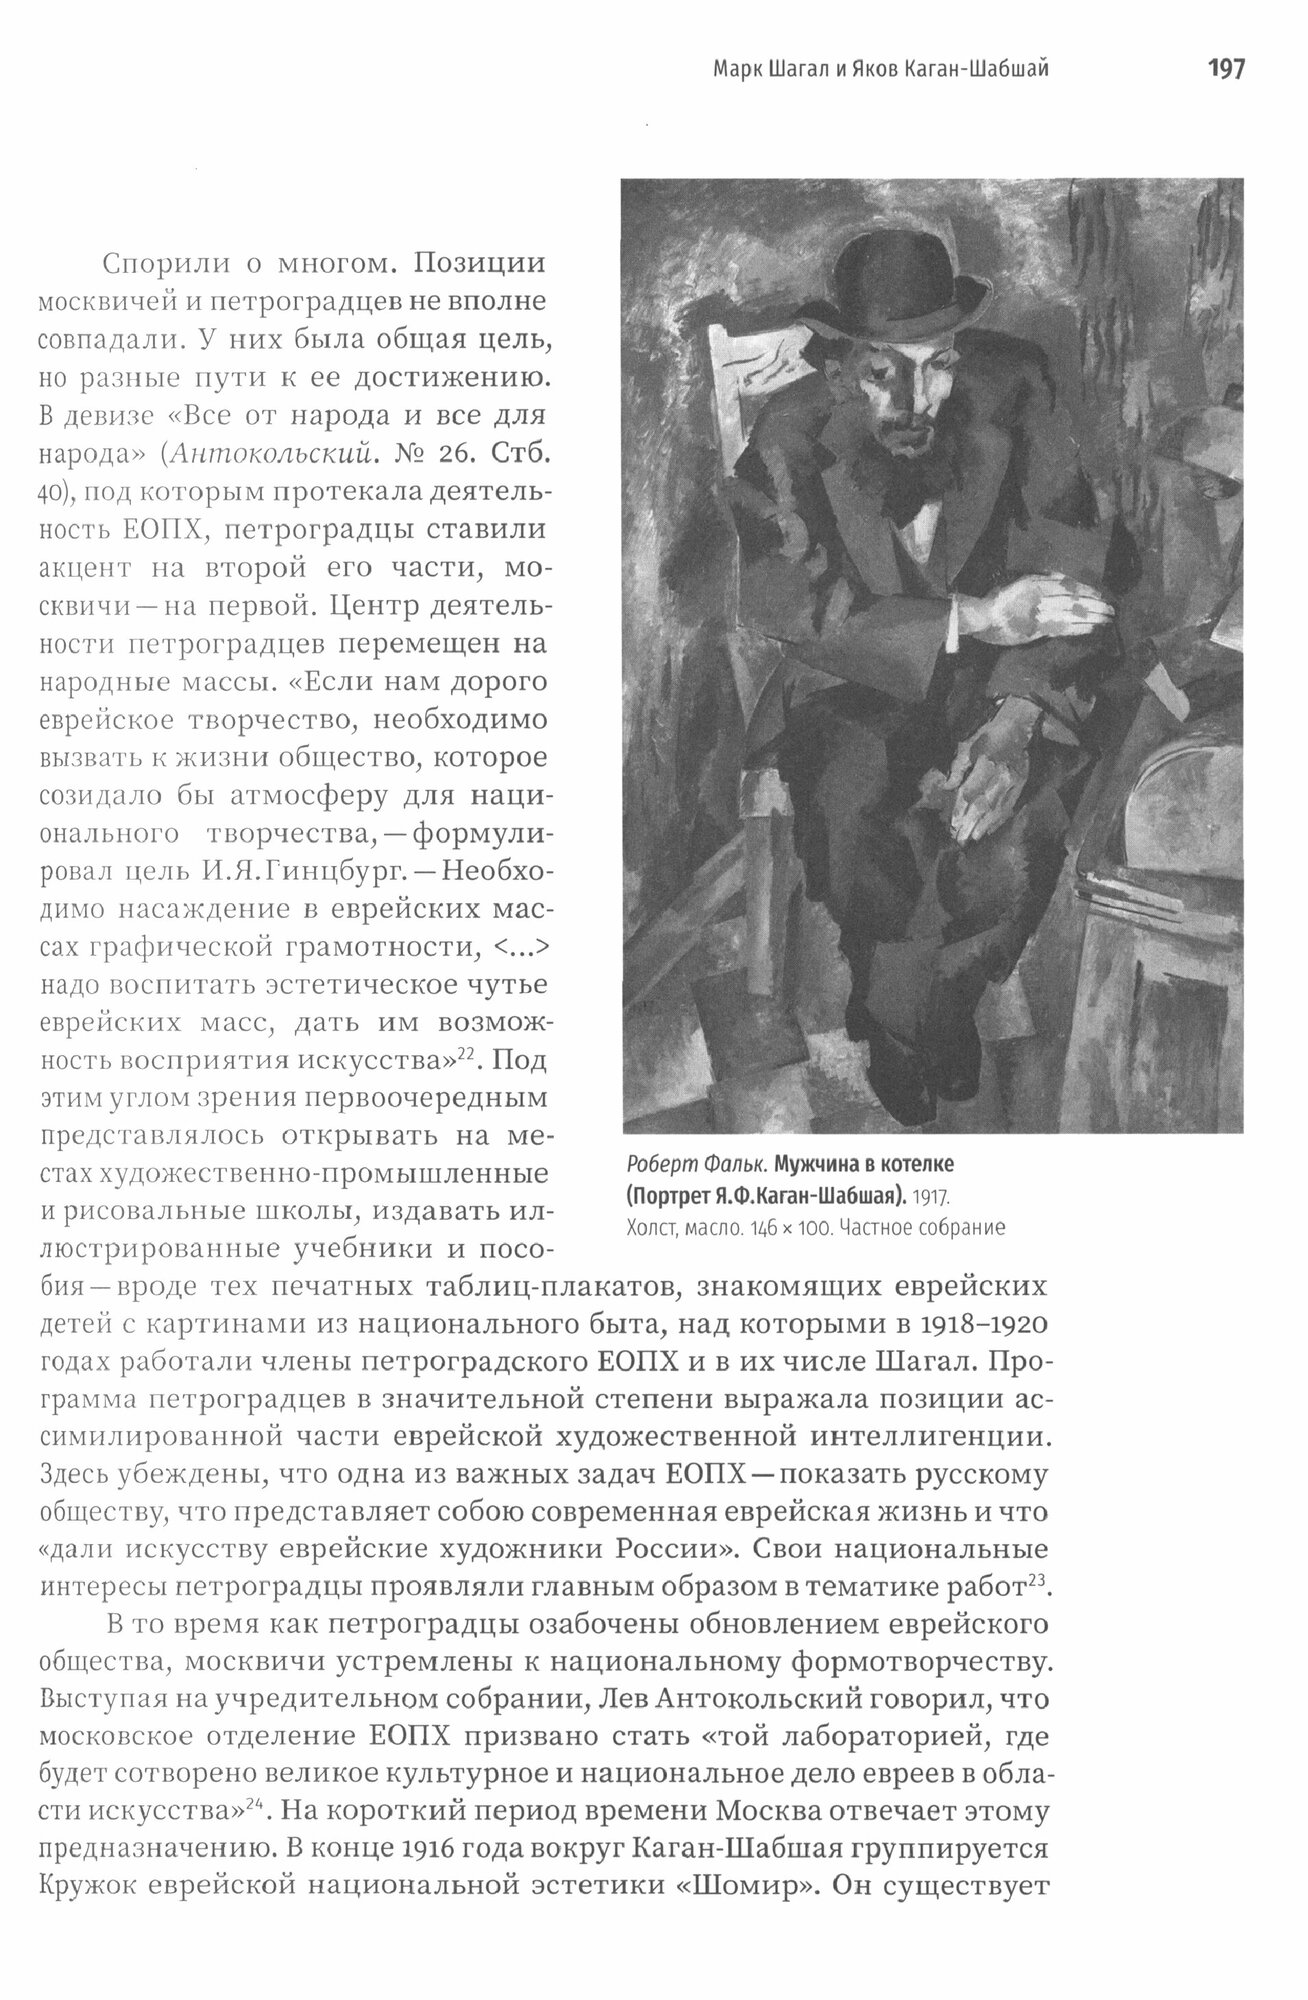 Марк Шагал в пространстве России - фото №13